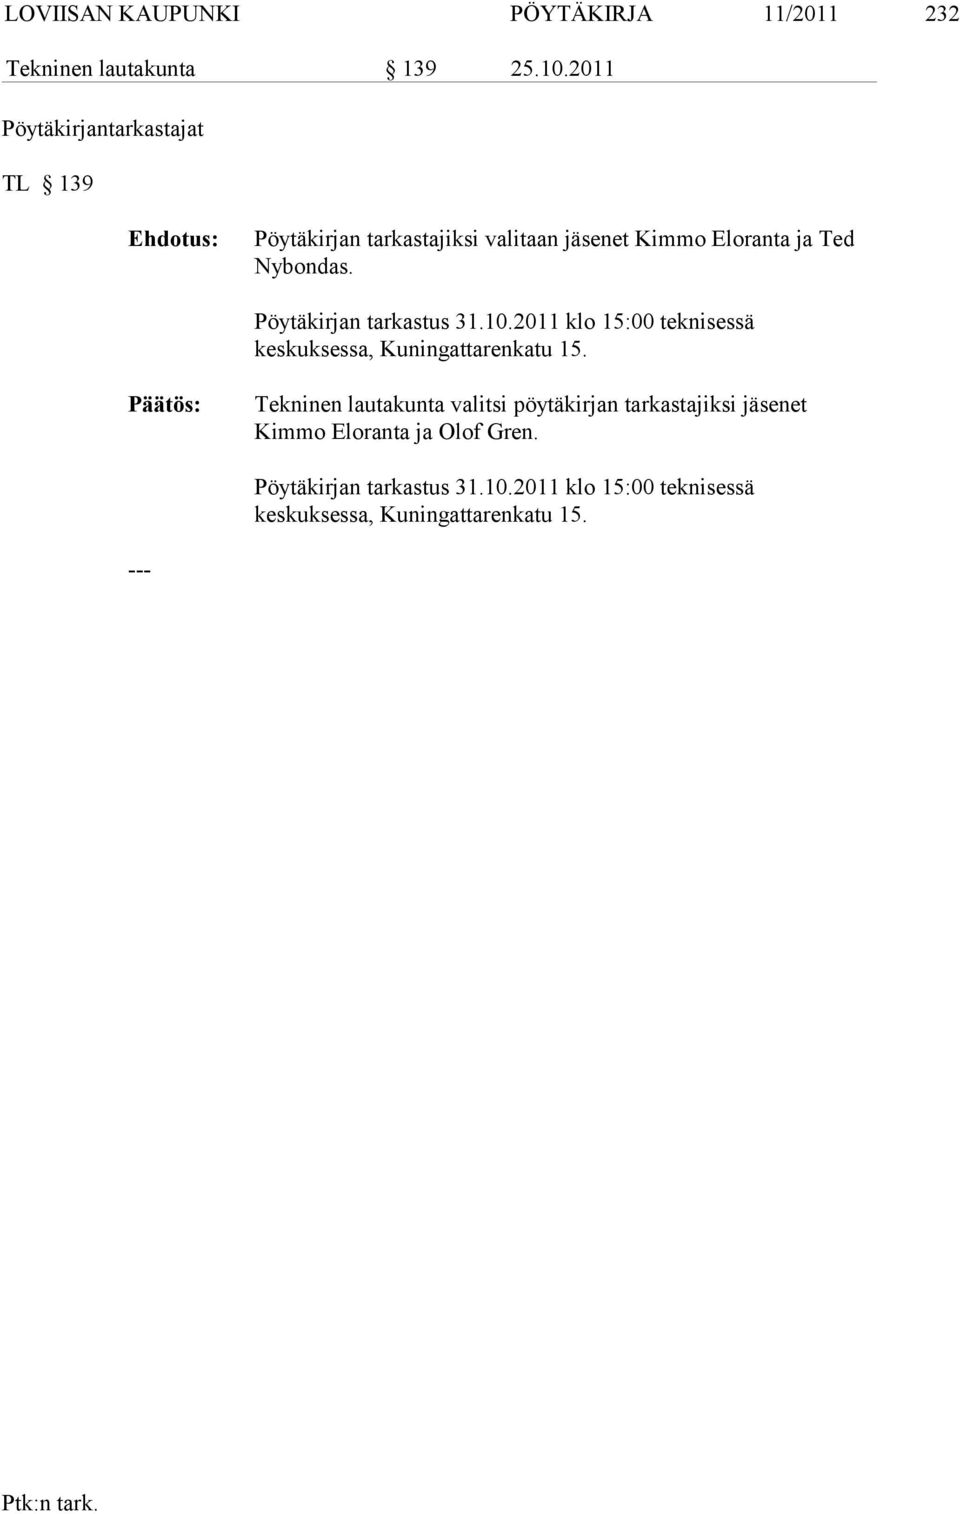 Pöytäkirjan tarkastus 31.10.2011 klo 15:00 teknisessä keskuksessa, Kunin gattarenkatu 15.